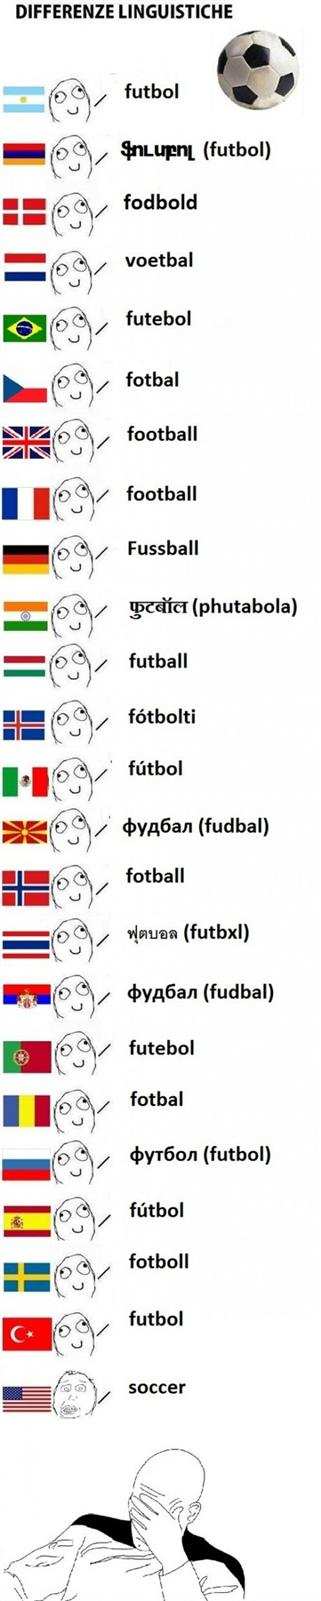 Voetbal in alle talen